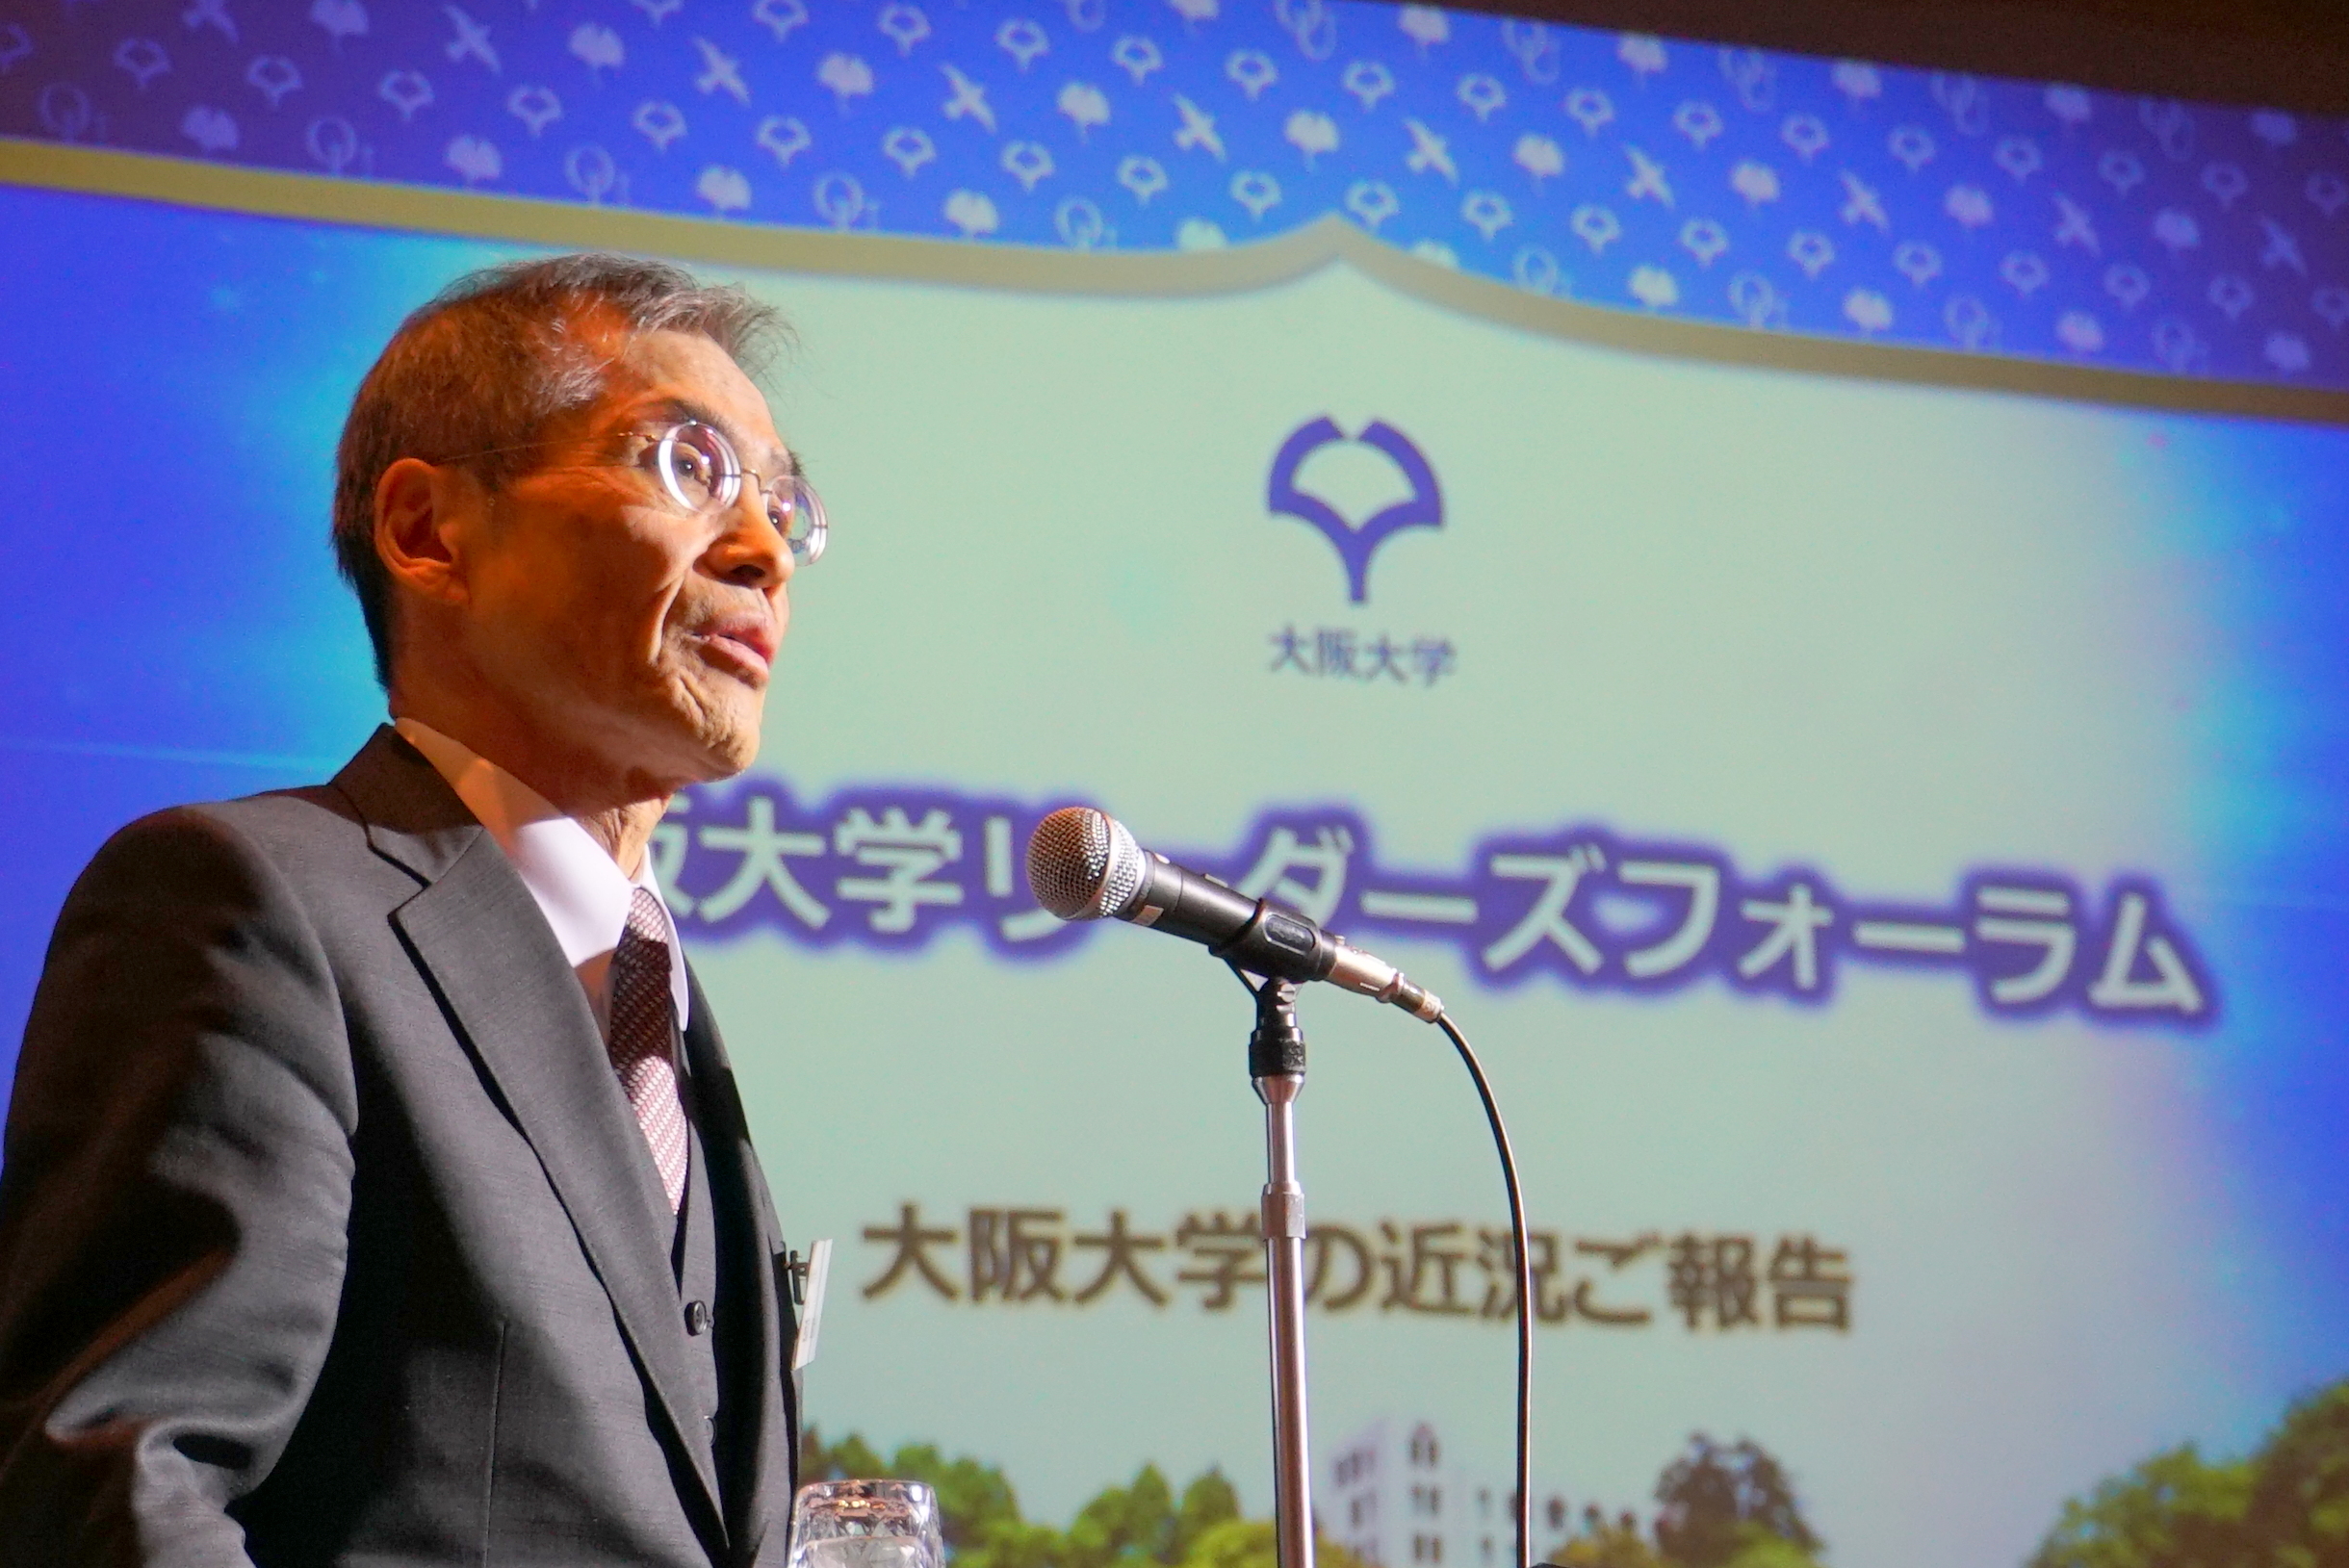 「大阪大学リーダーズフォーラム」を東京で開催、160名が出席